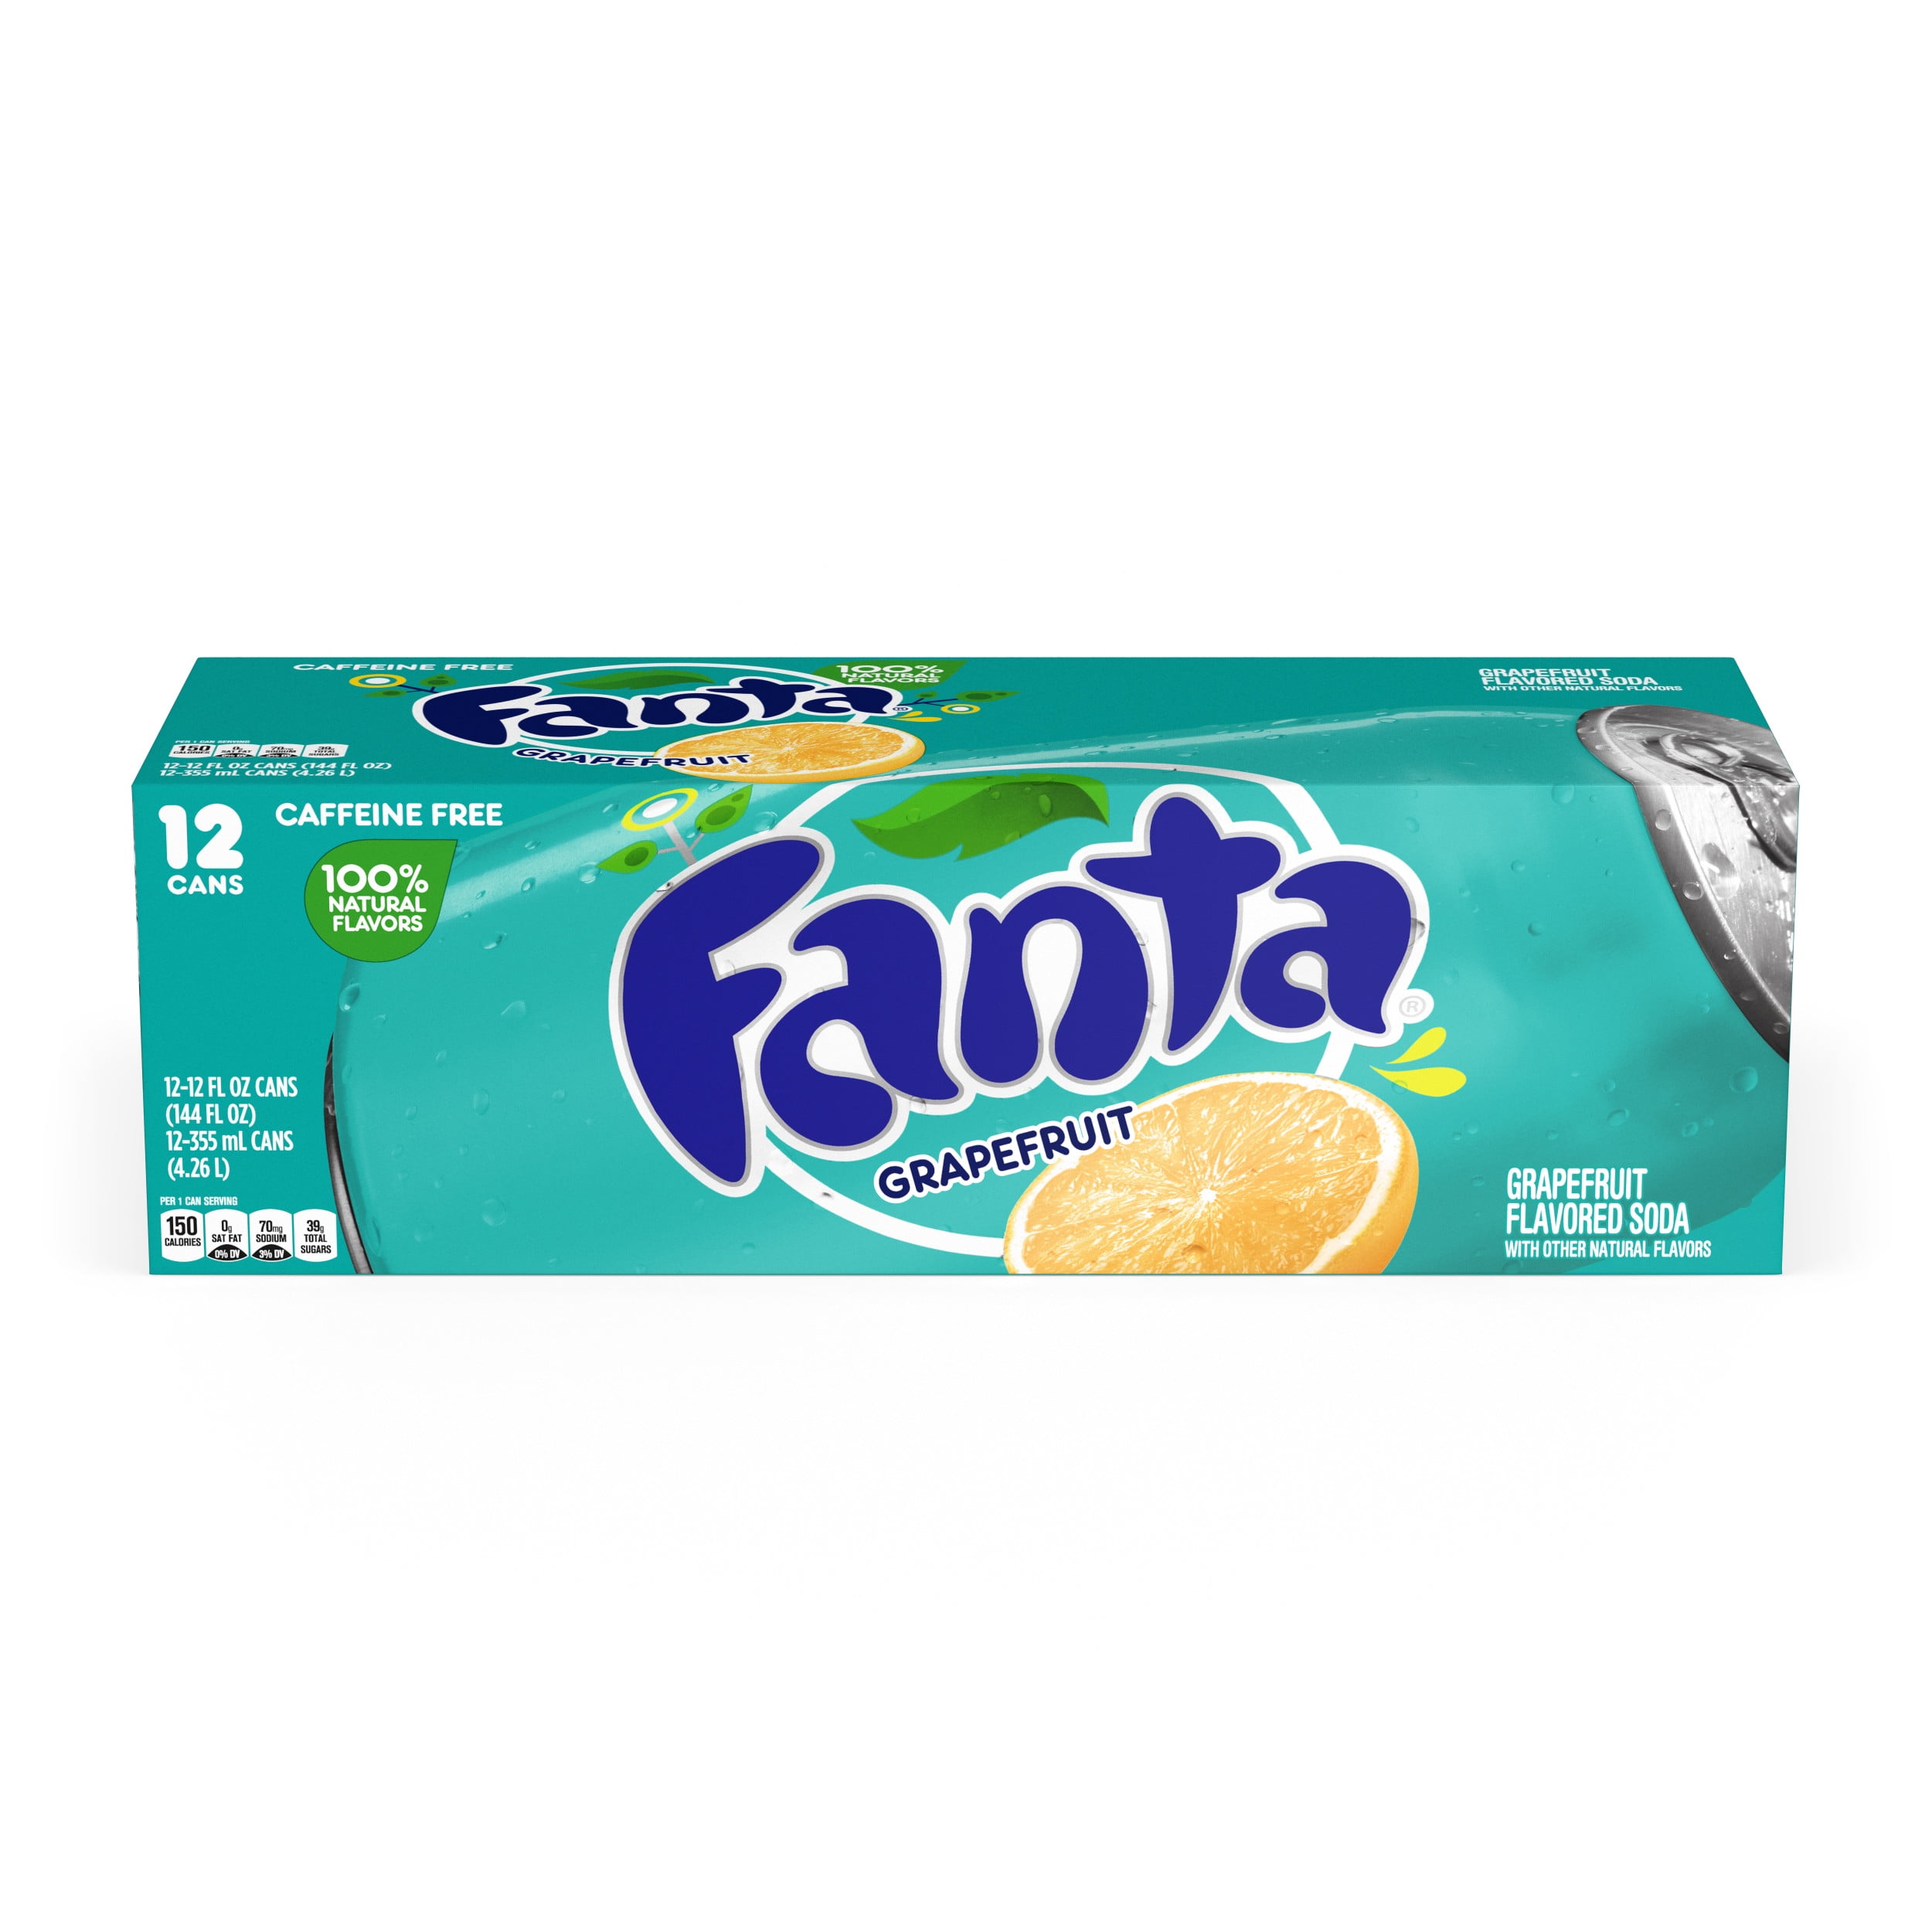 Fanta Grapefruit Soda Fruit Flavored Soft Drink, 12 fl oz, 12 Pack ...